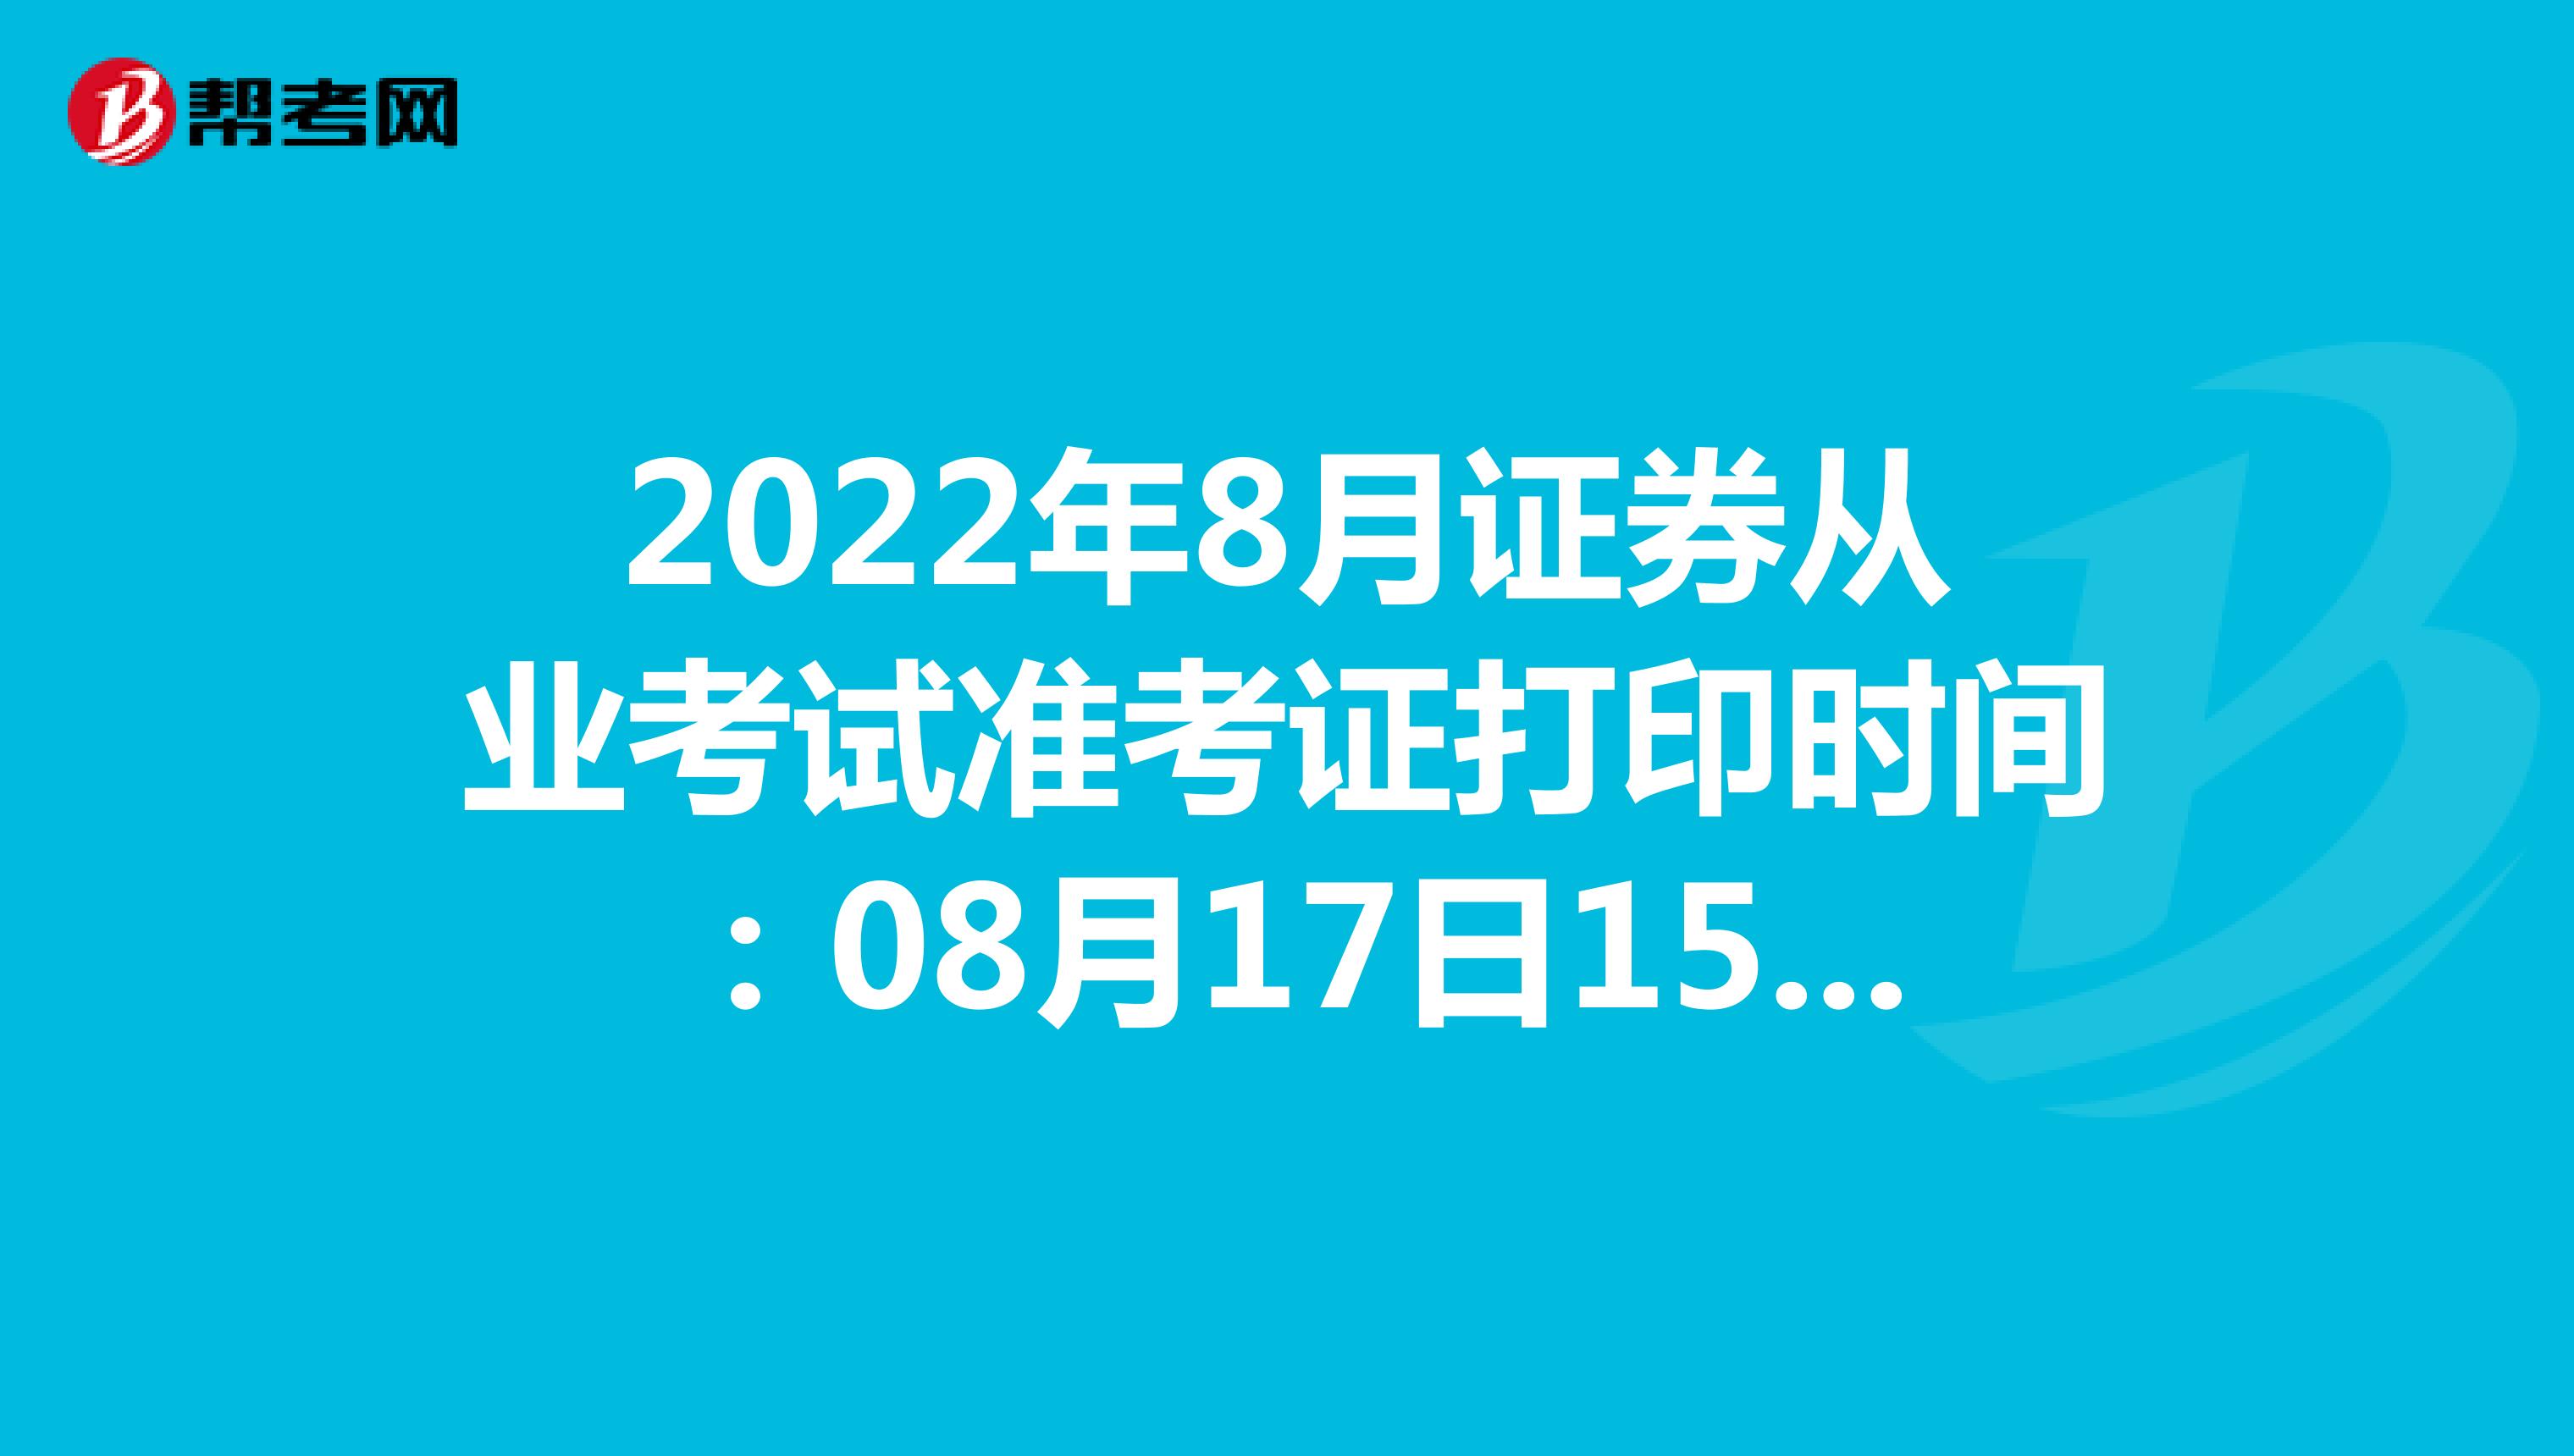 2022年8月证券从业考试准考证打印时间：08月17日15时 - 08月21日23时